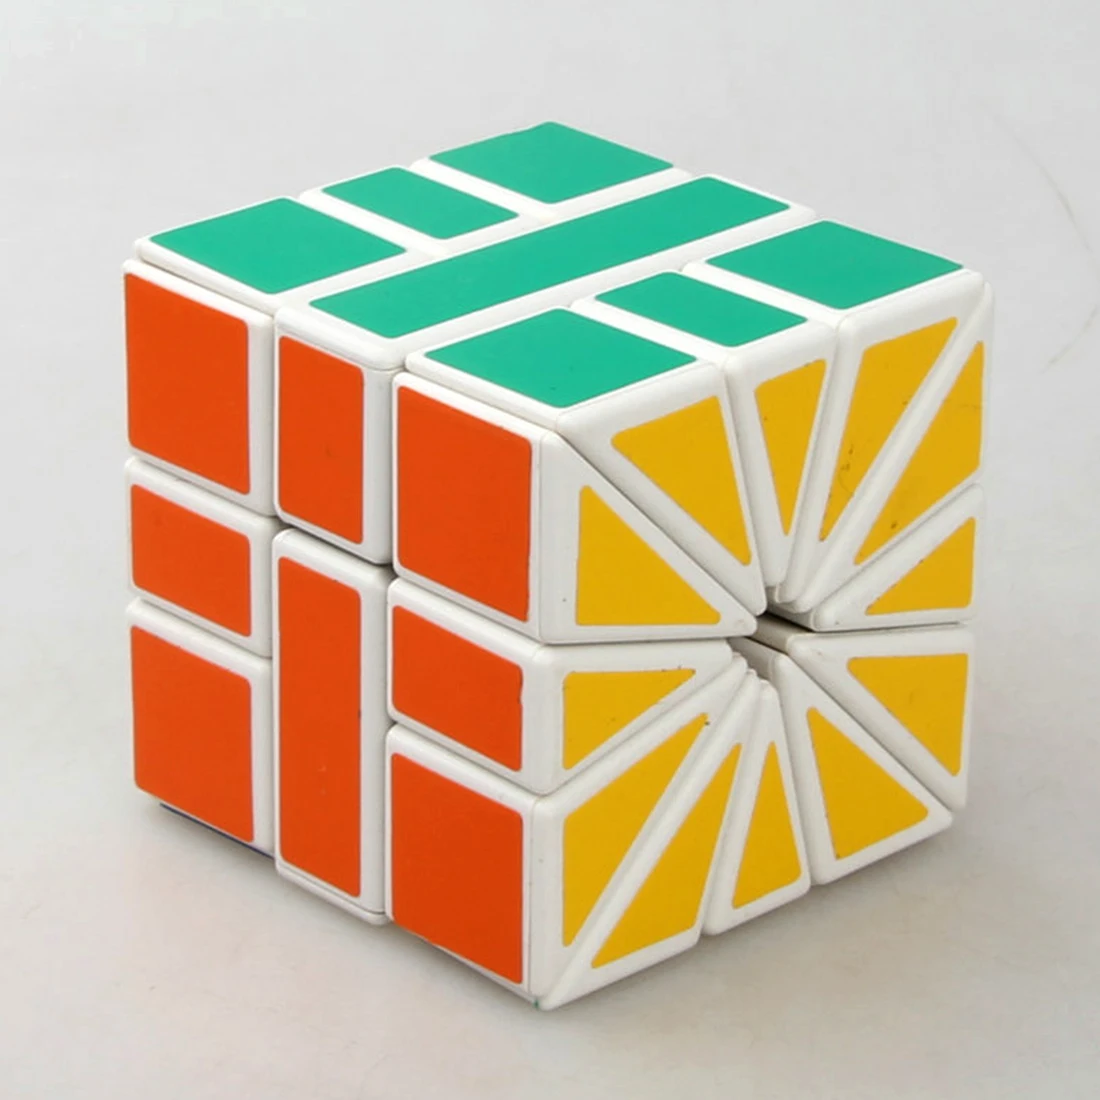 CubeTwist квадратный-2 SQ2 скоростной магический куб Пазлы 3X3X3 зеркальный куб Развивающие игрушки рождественские подарки для детей